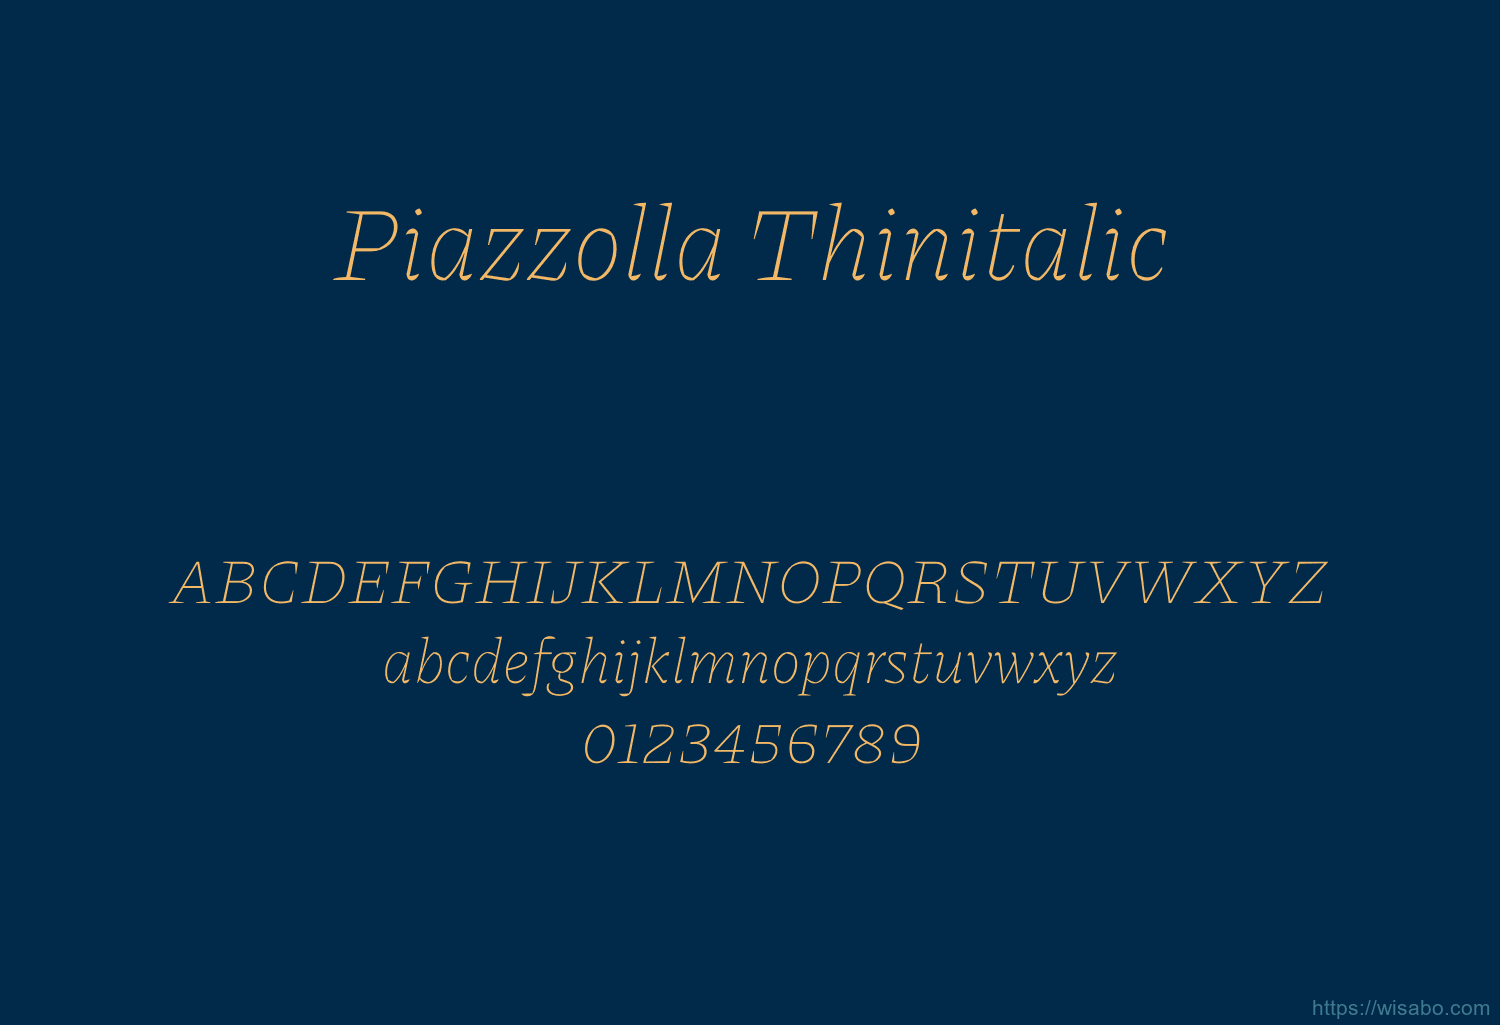 Piazzolla Thinitalic